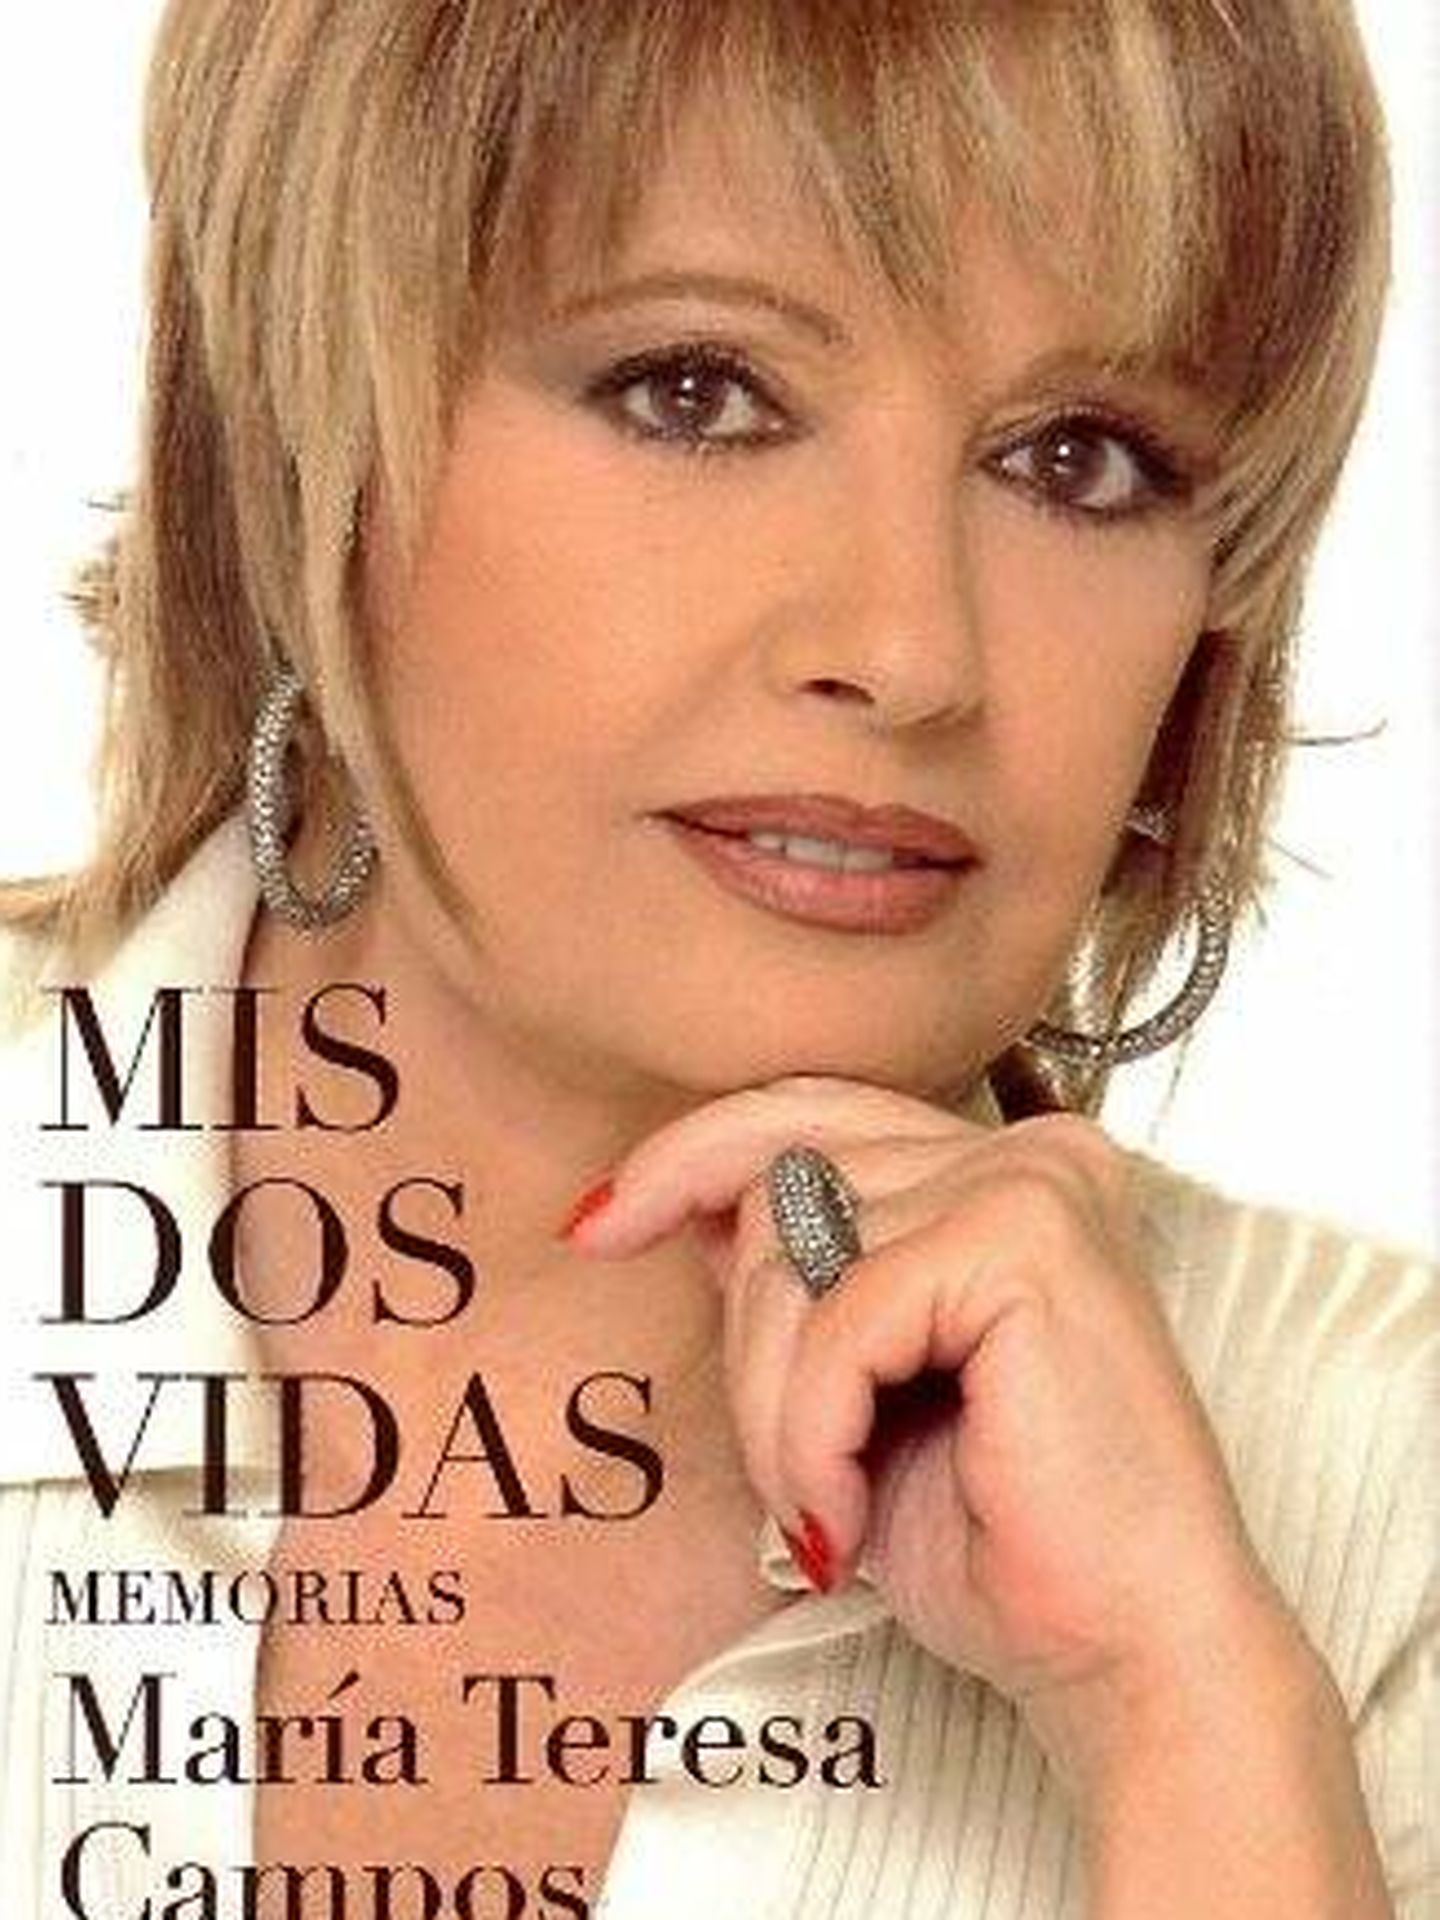 El libro de memorias de María Teresa Campos, publicado en 2004. (Editorial Planeta)